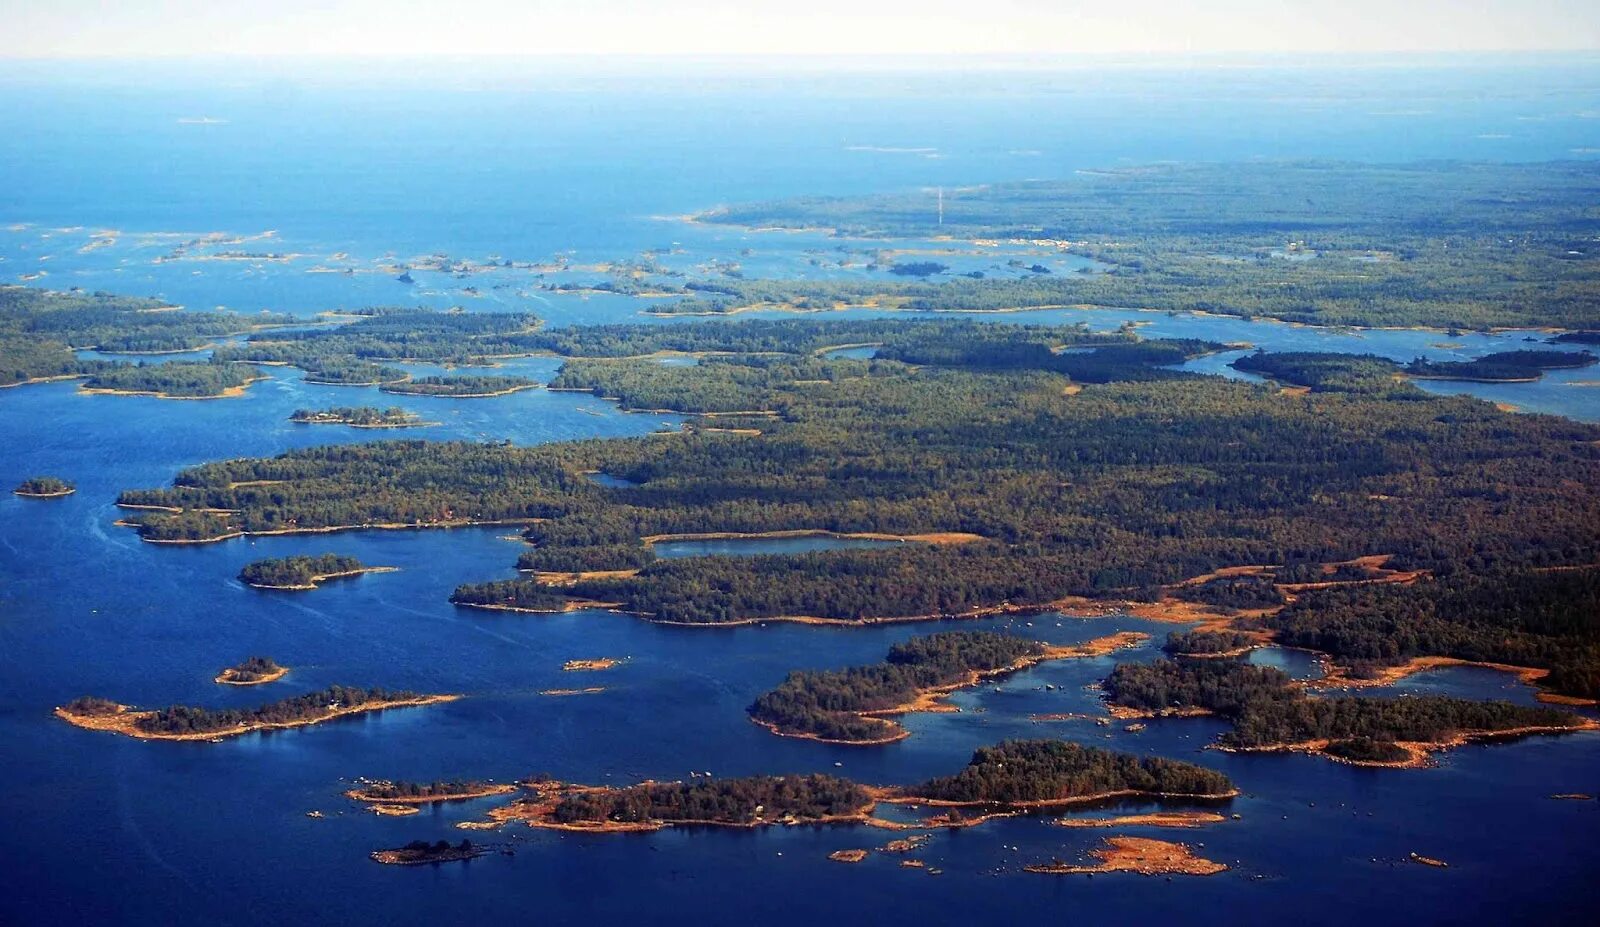 Озерное плато Финляндии. Финляндия Страна тысячи озер. Финляндия тысяча озер. Финляндия Страна 1000 озер. Тысяча озер где